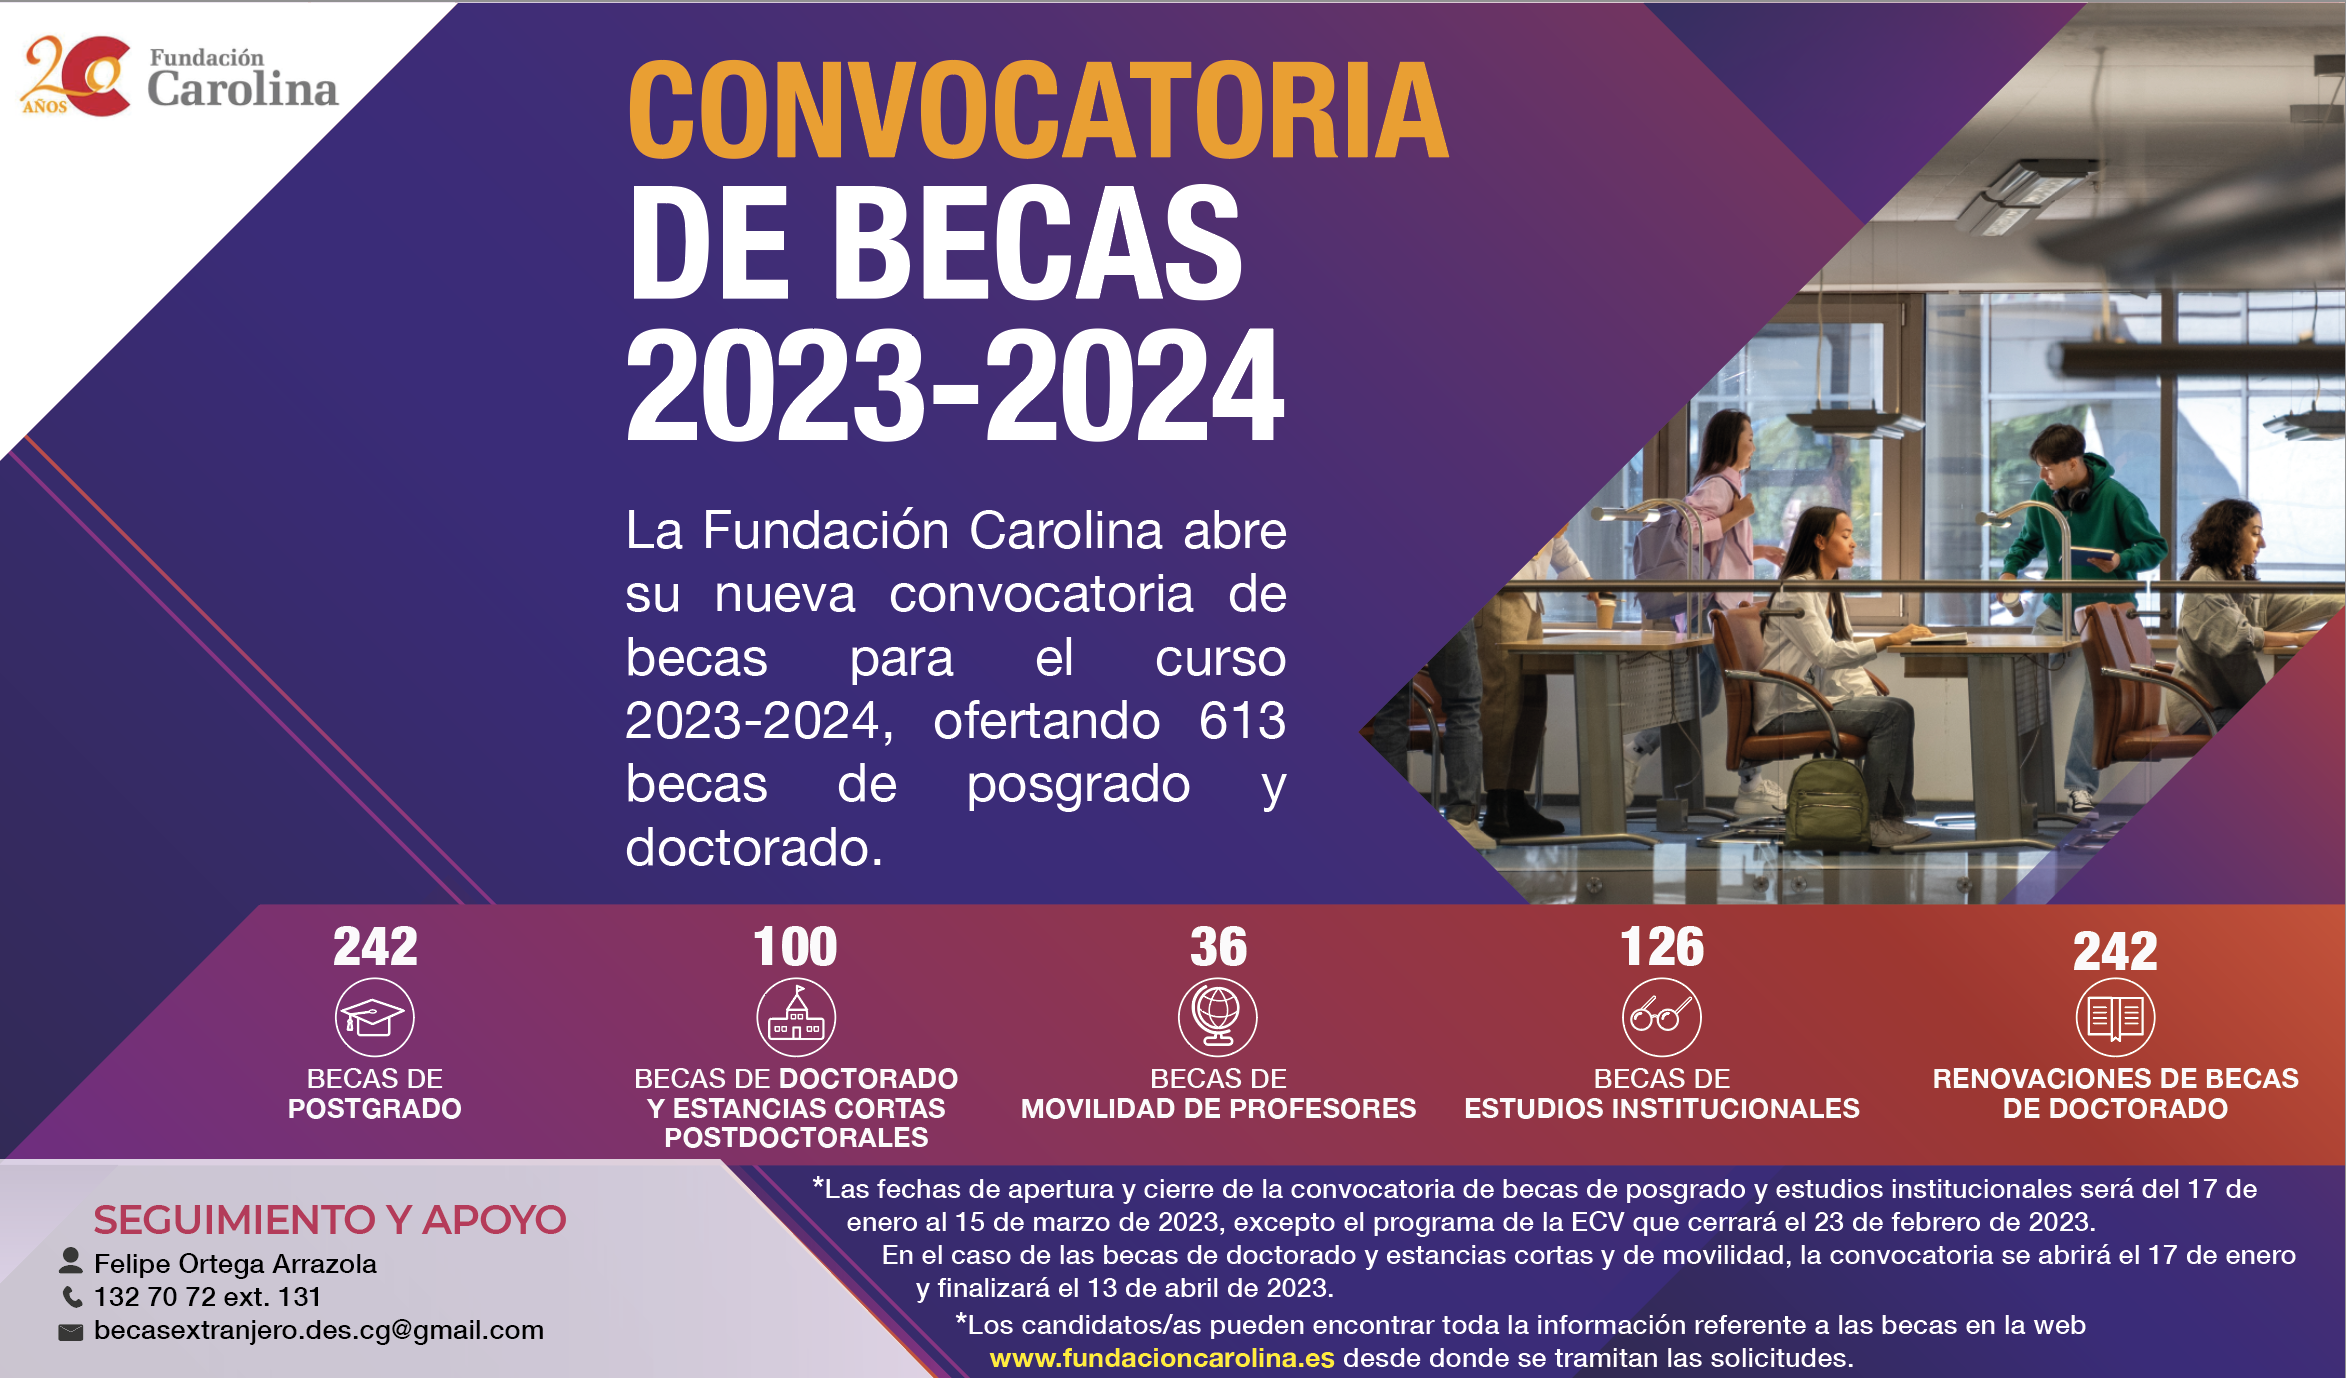 Convocatoria abierta FUNDACIÓN CAROLINA 2023-2024, ofertando 613 becas de posgrado y doctorado